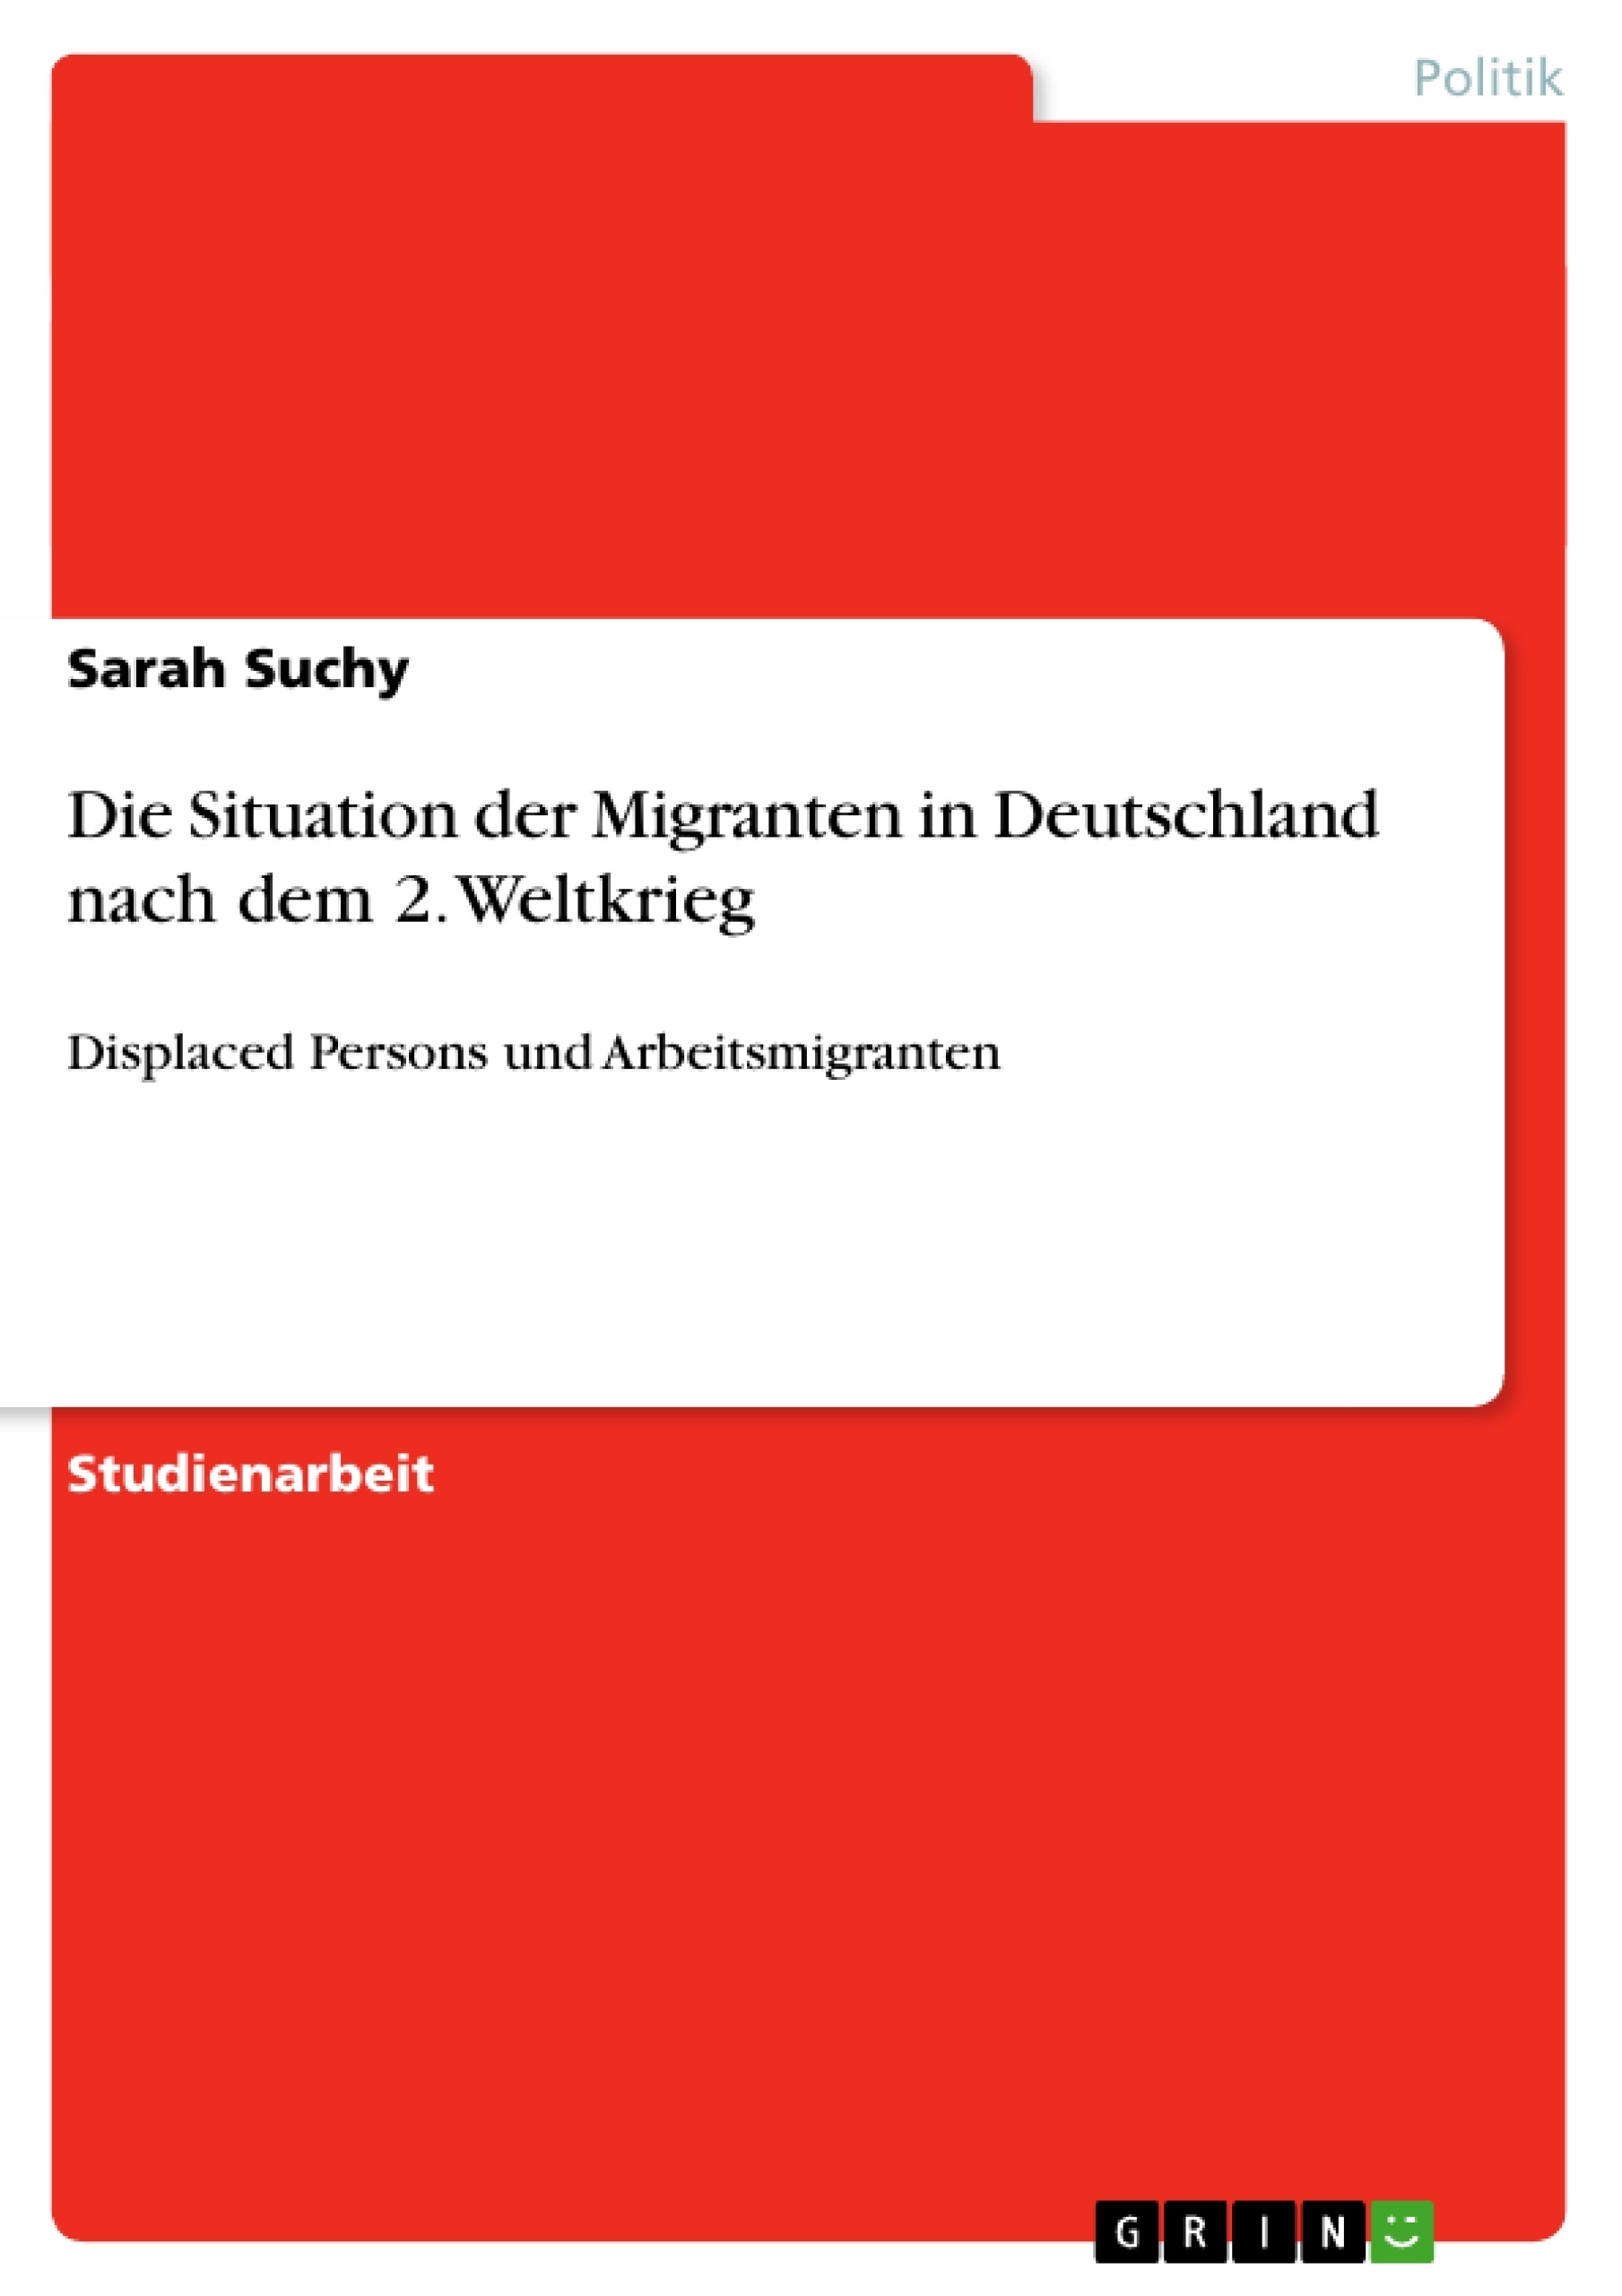 Title: Die Situation der Migranten in Deutschland nach dem 2. Weltkrieg